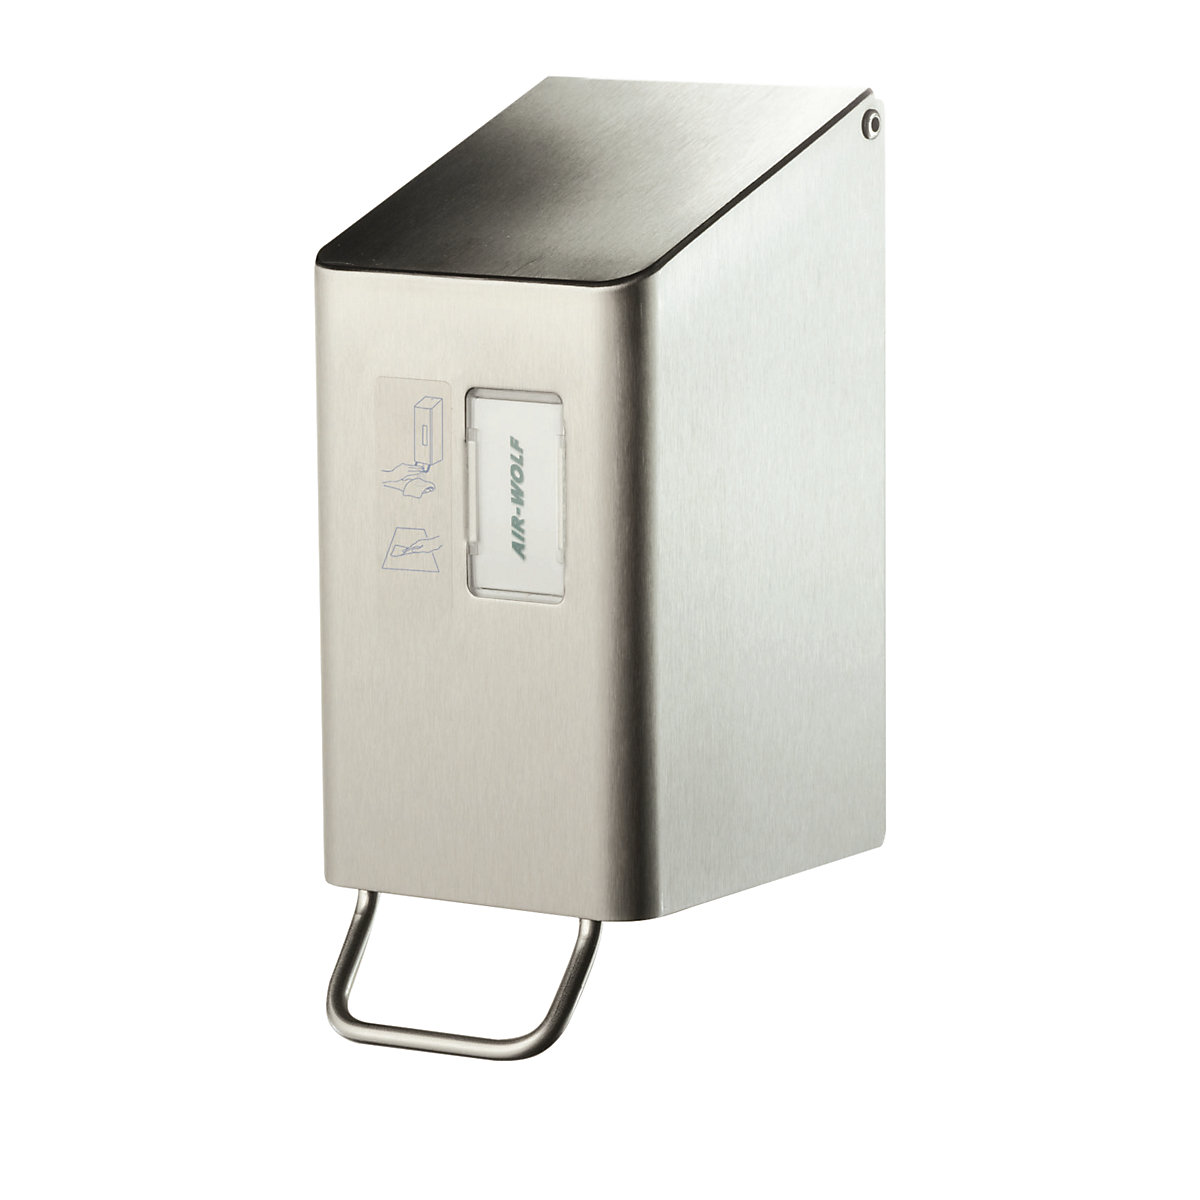 Dispensador de producto de limpieza para el asiento del WC - AIR-WOLF